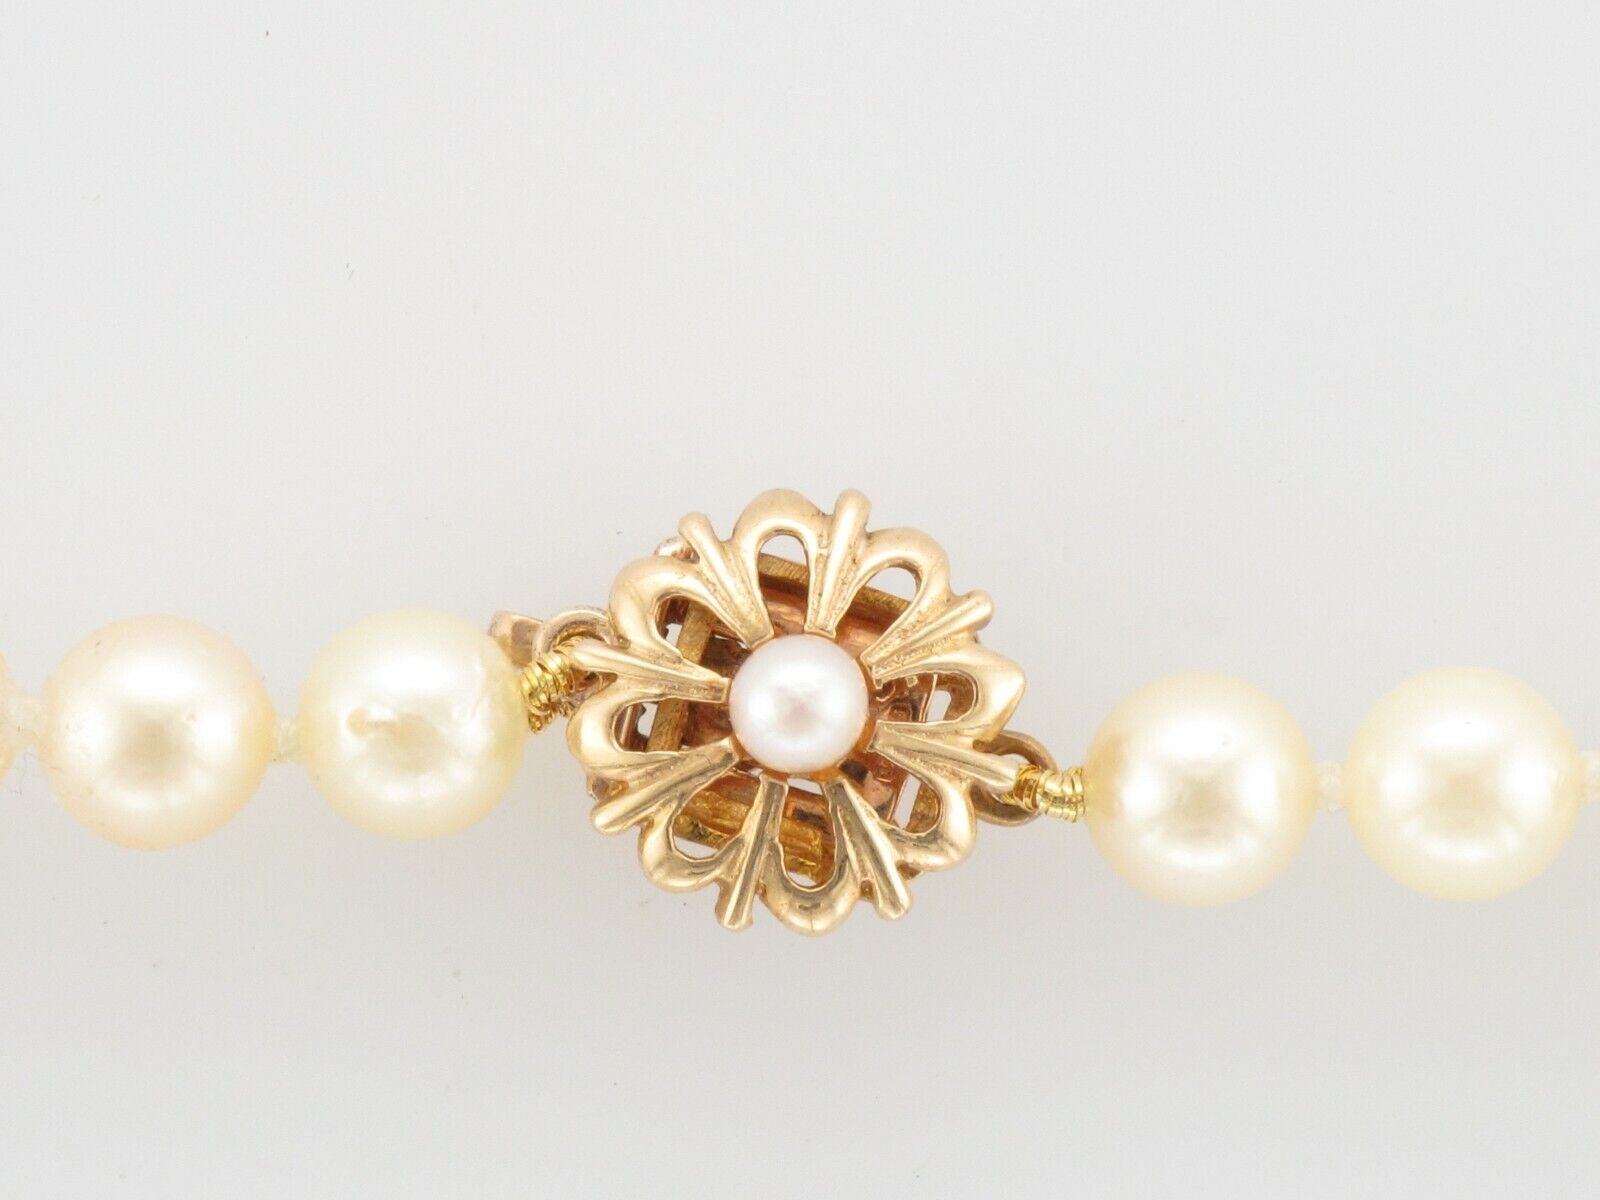 Collier de perles de culture de 6 mm avec un très joli fermoir en or jaune 9ct et perles.

Informations supplémentaires :
Longueur totale de 18
Noué individuellement
Or Poids : 1,5g
SMS2384